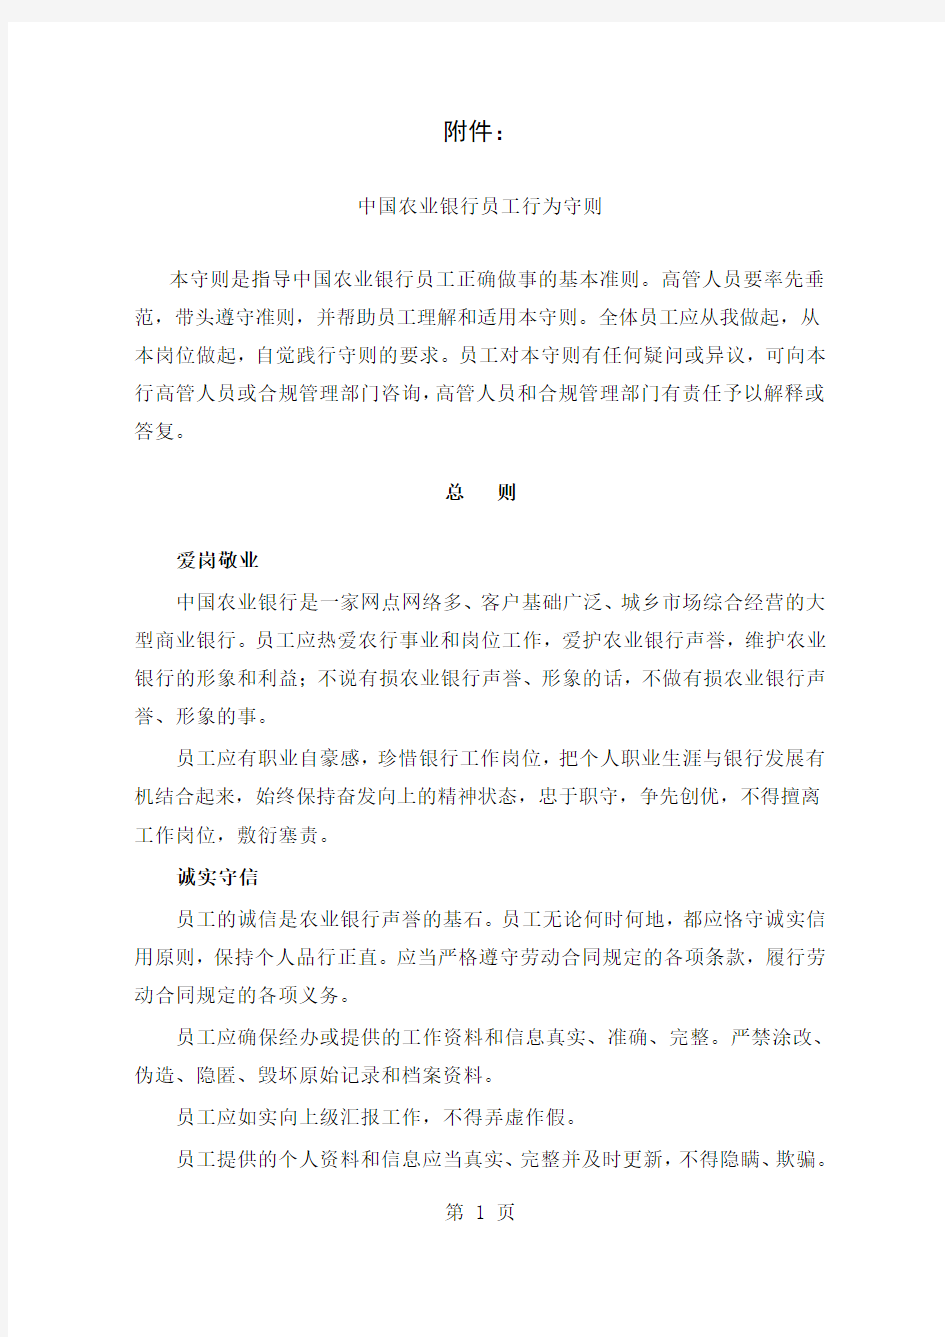 中国农业银行员工行为守则-5页精选文档